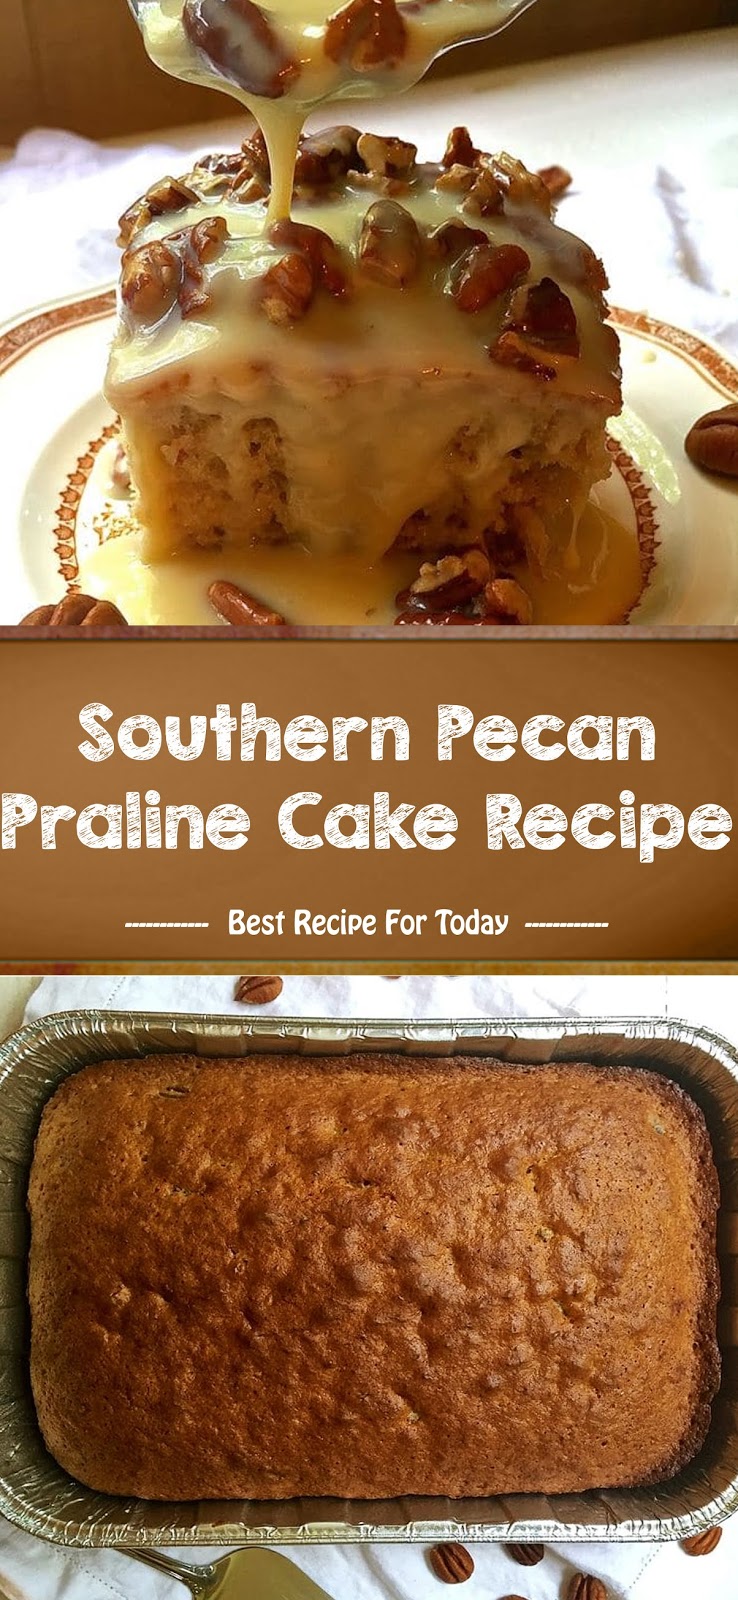 Southern Pecan Praline Cake Recipe